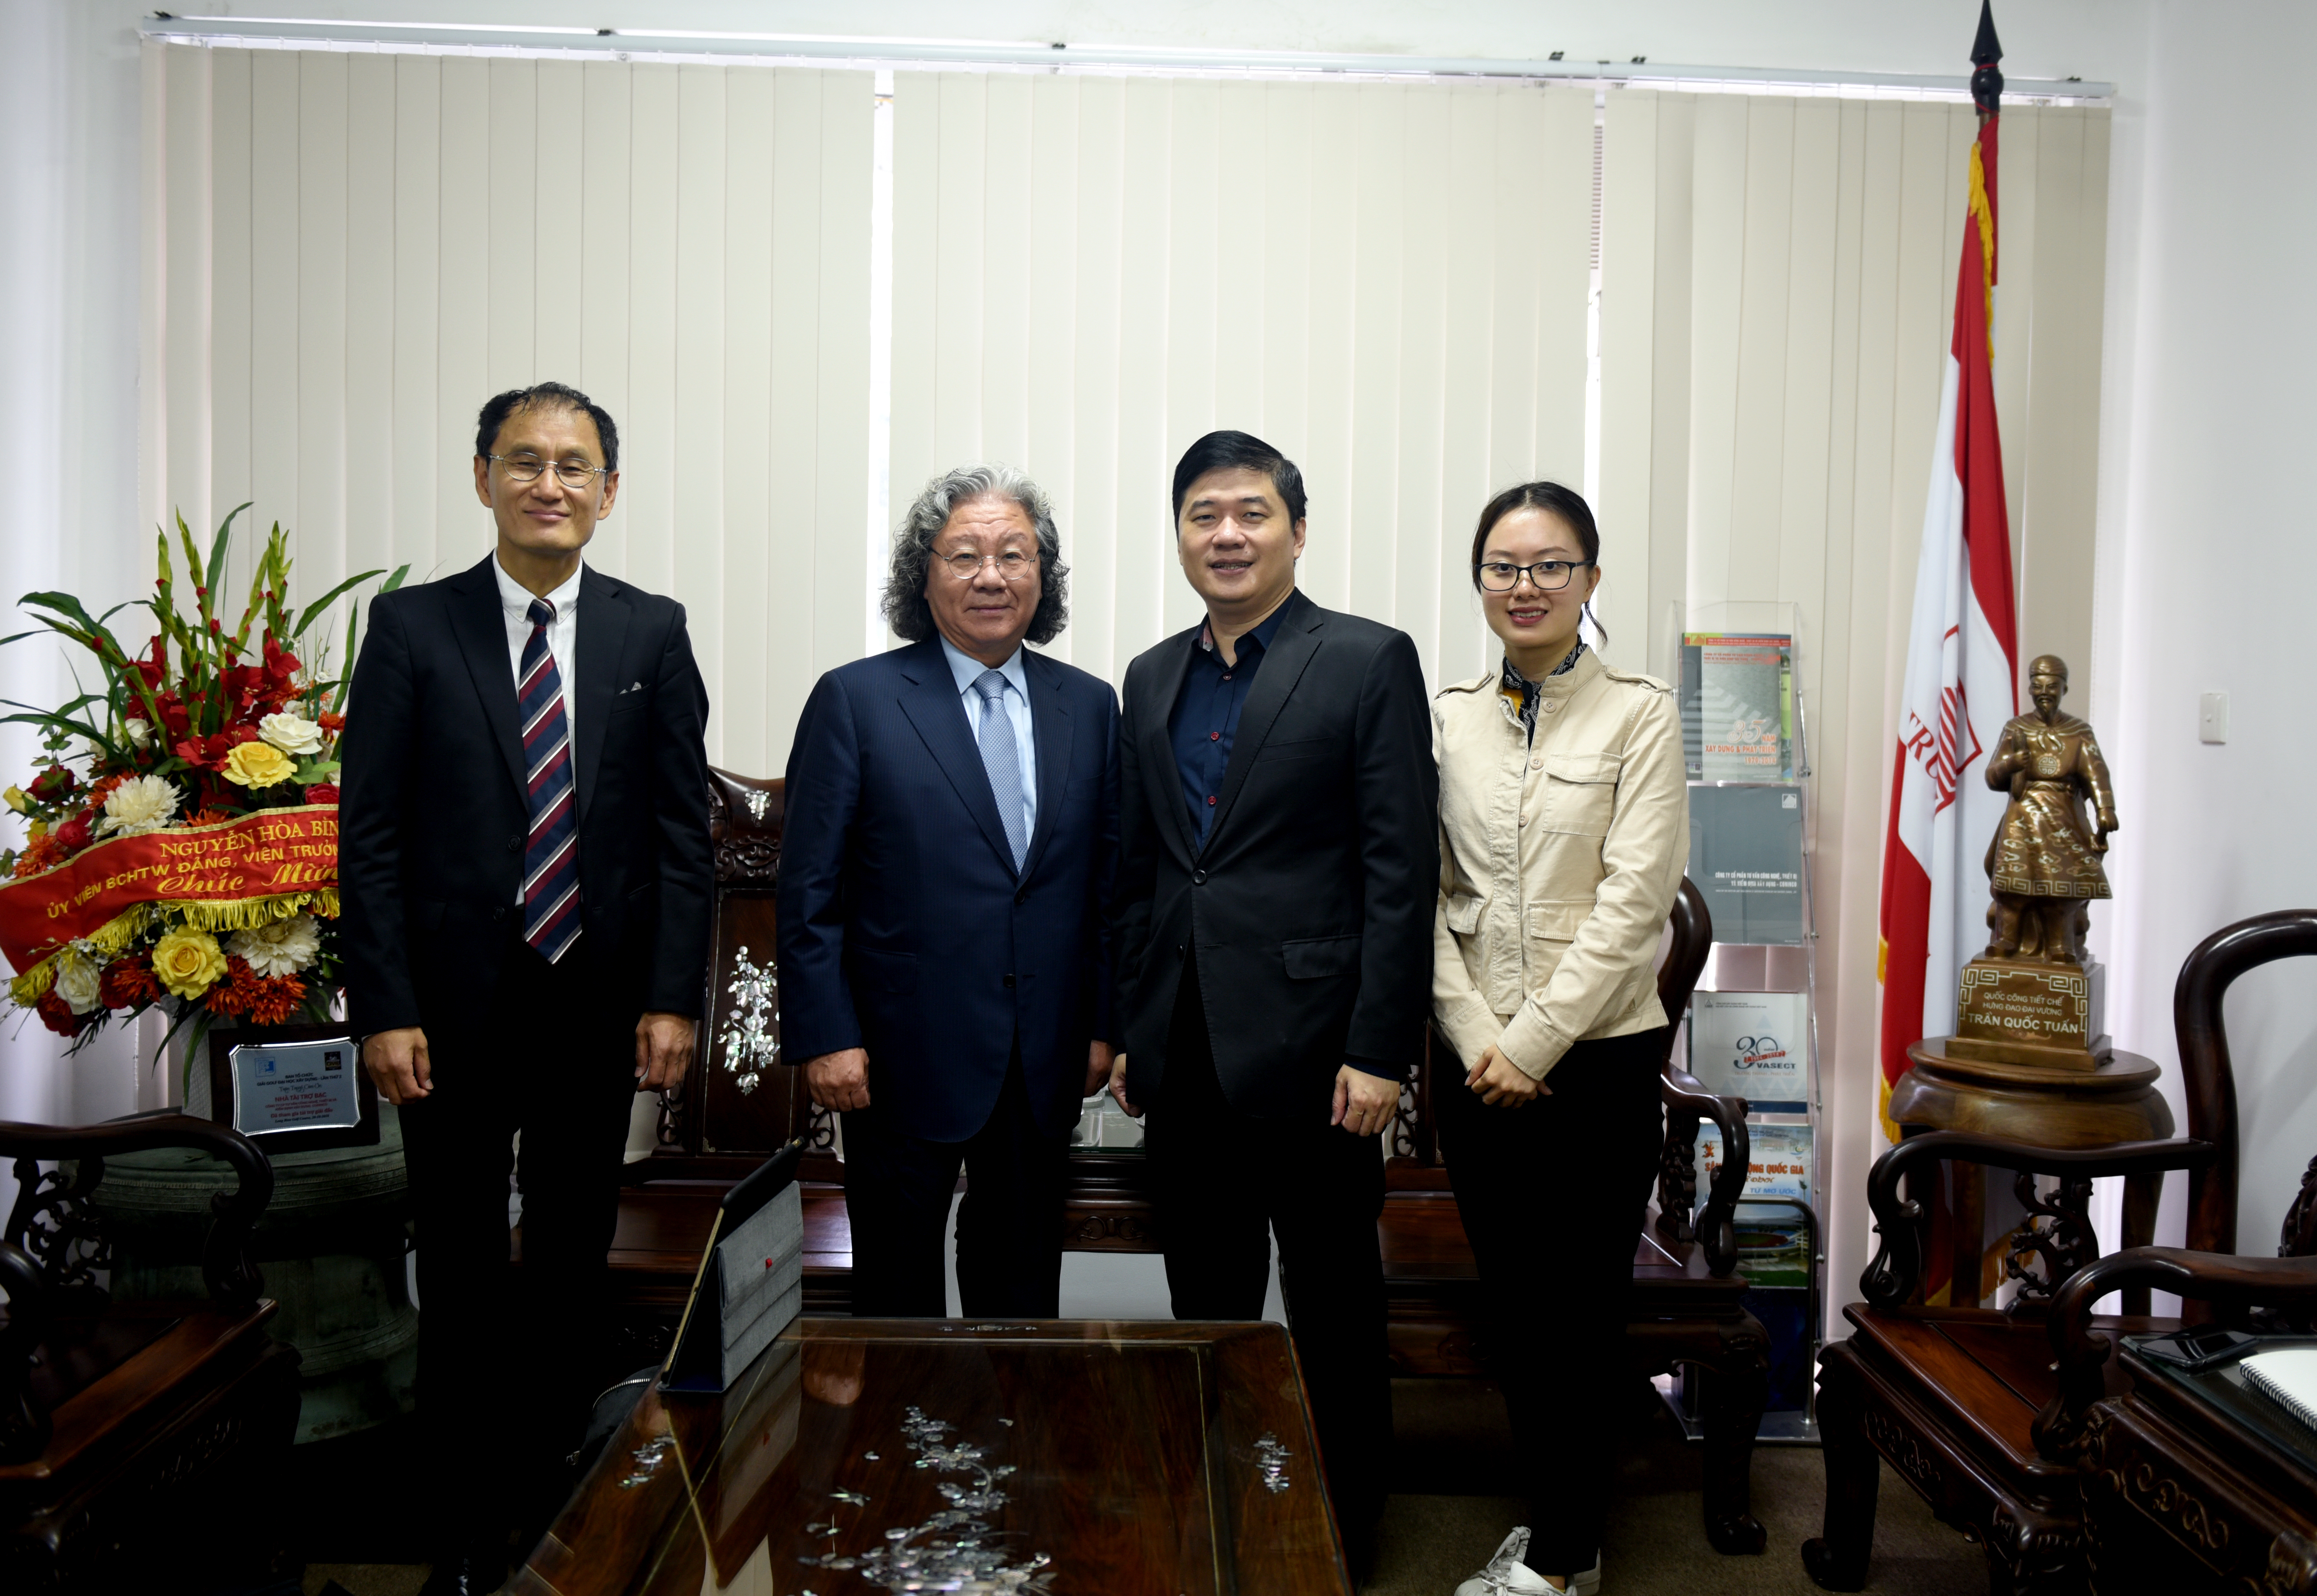 Chủ tịch Tập đoàn SAMYANG – Hàn Quốc đến thăm và làm việc tại CONINCO